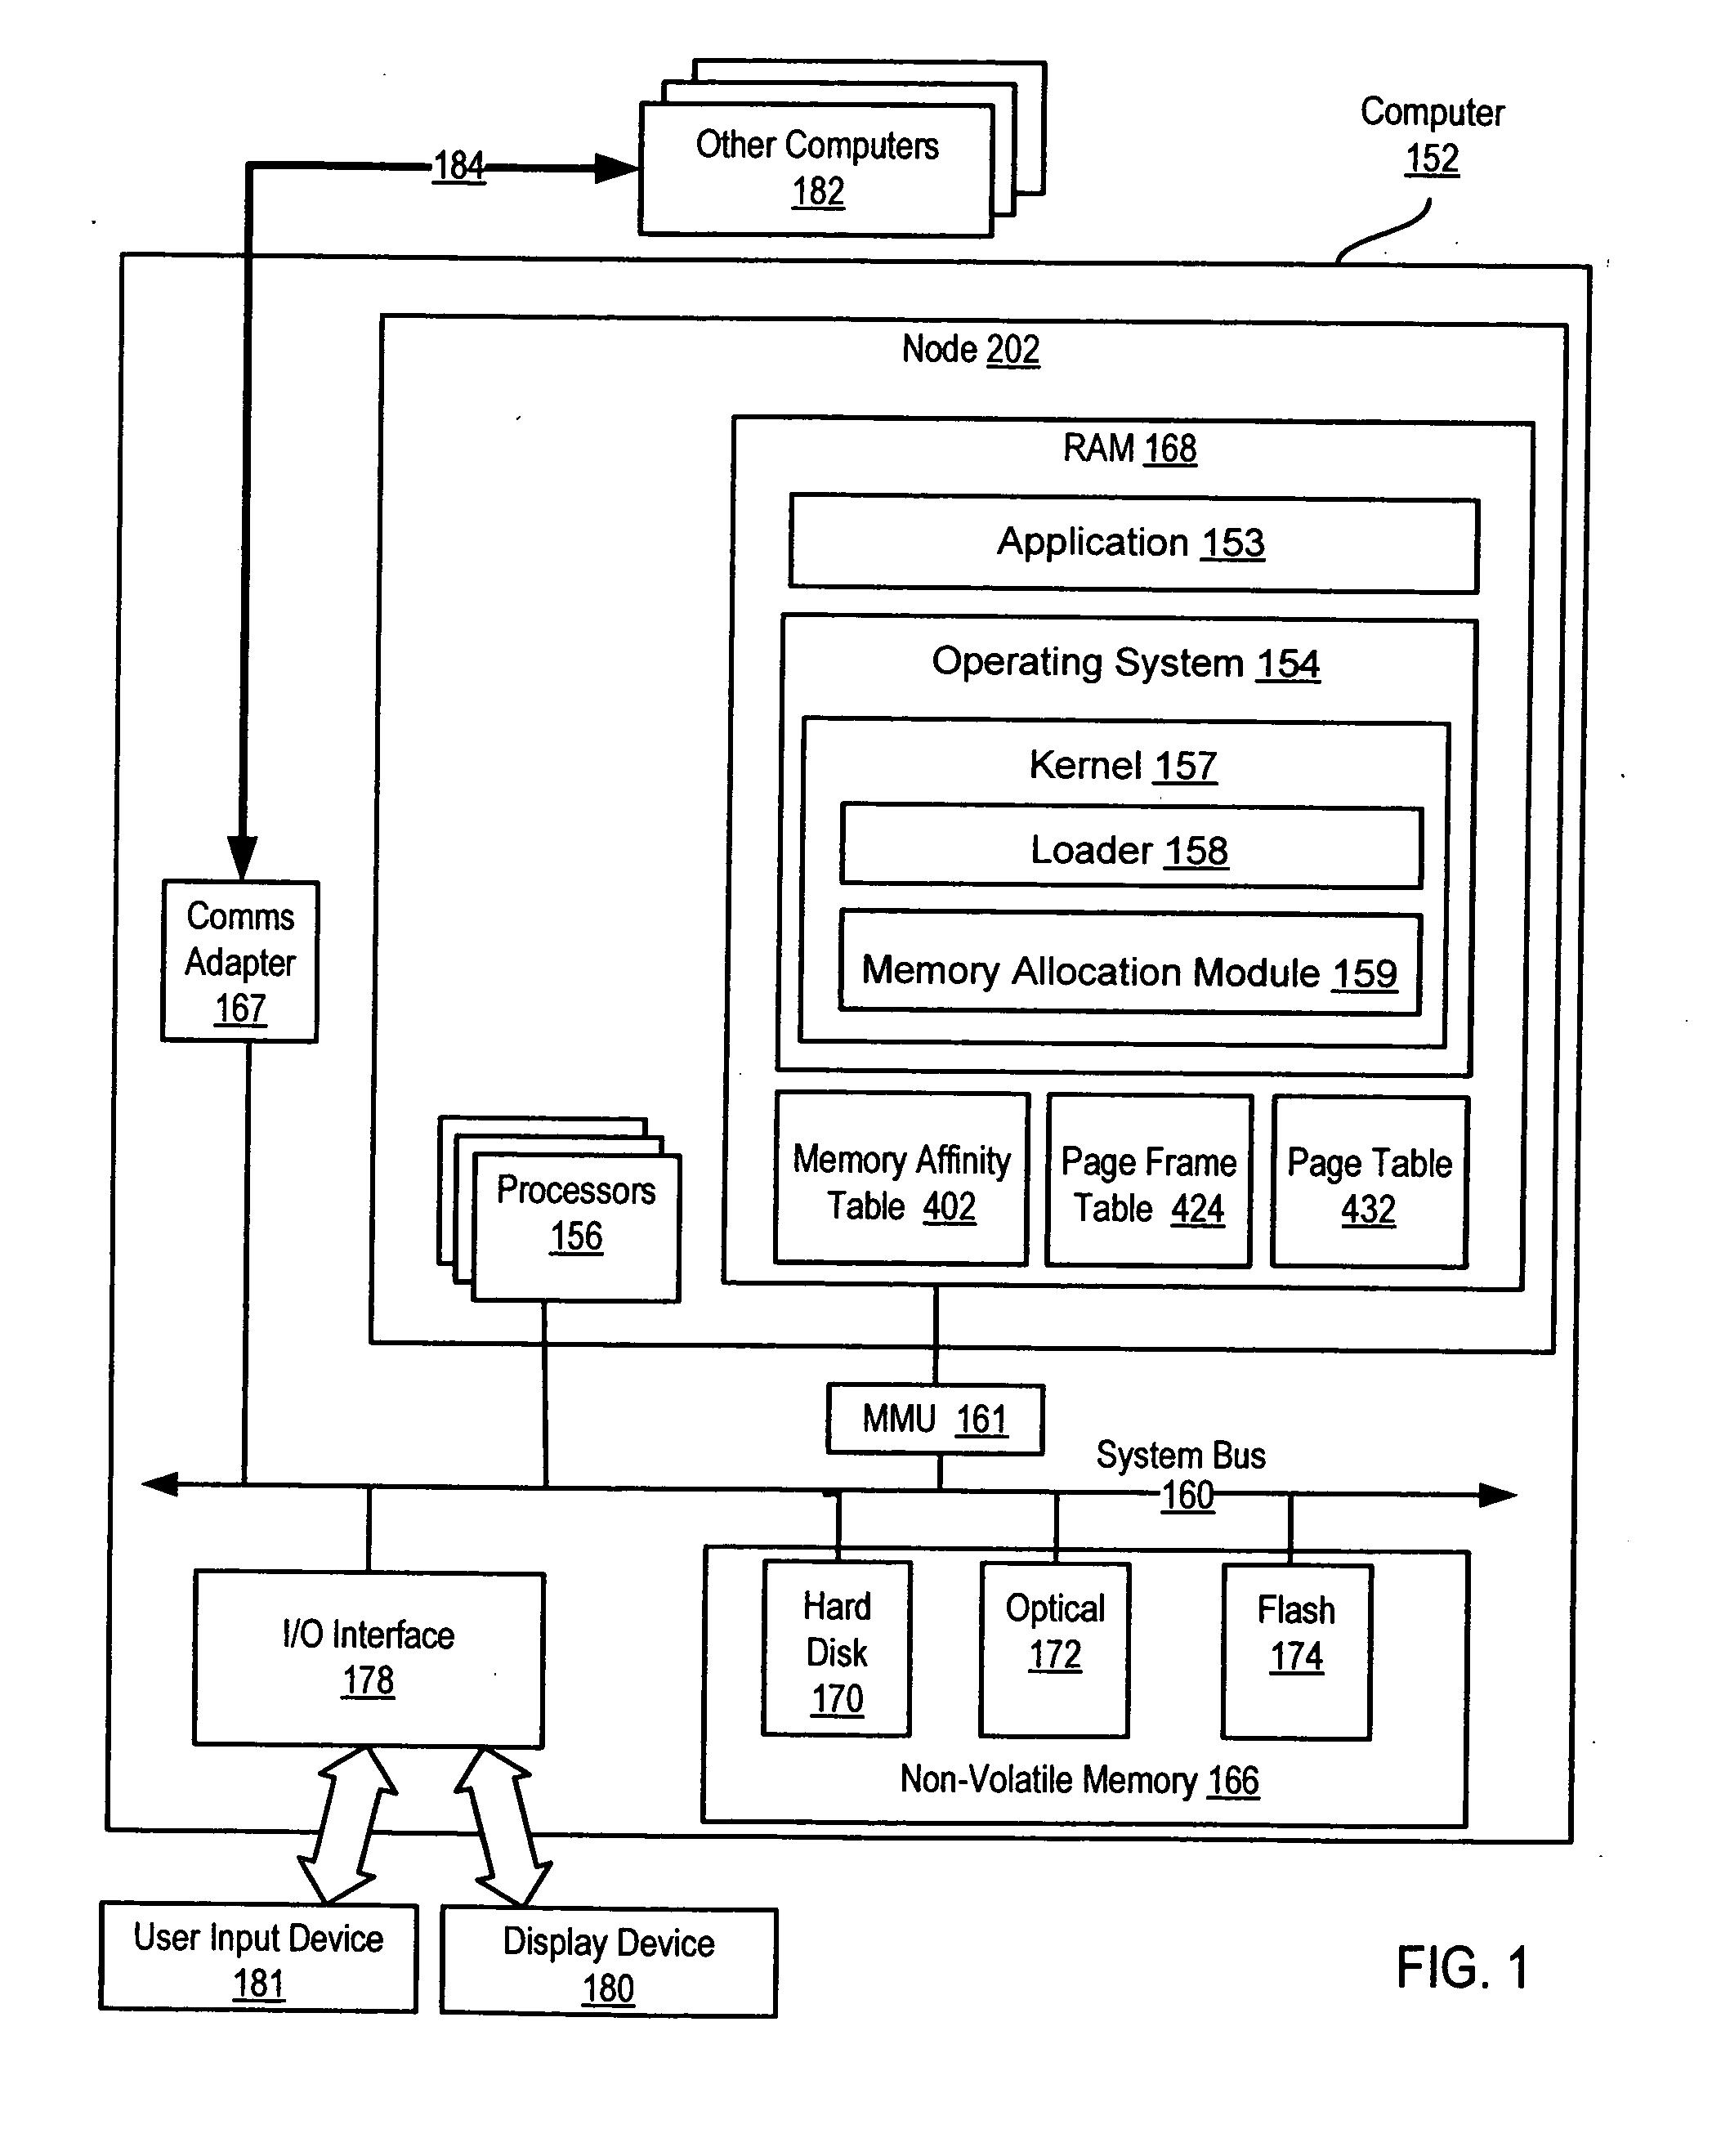 Memory allocation in a multi-node computer